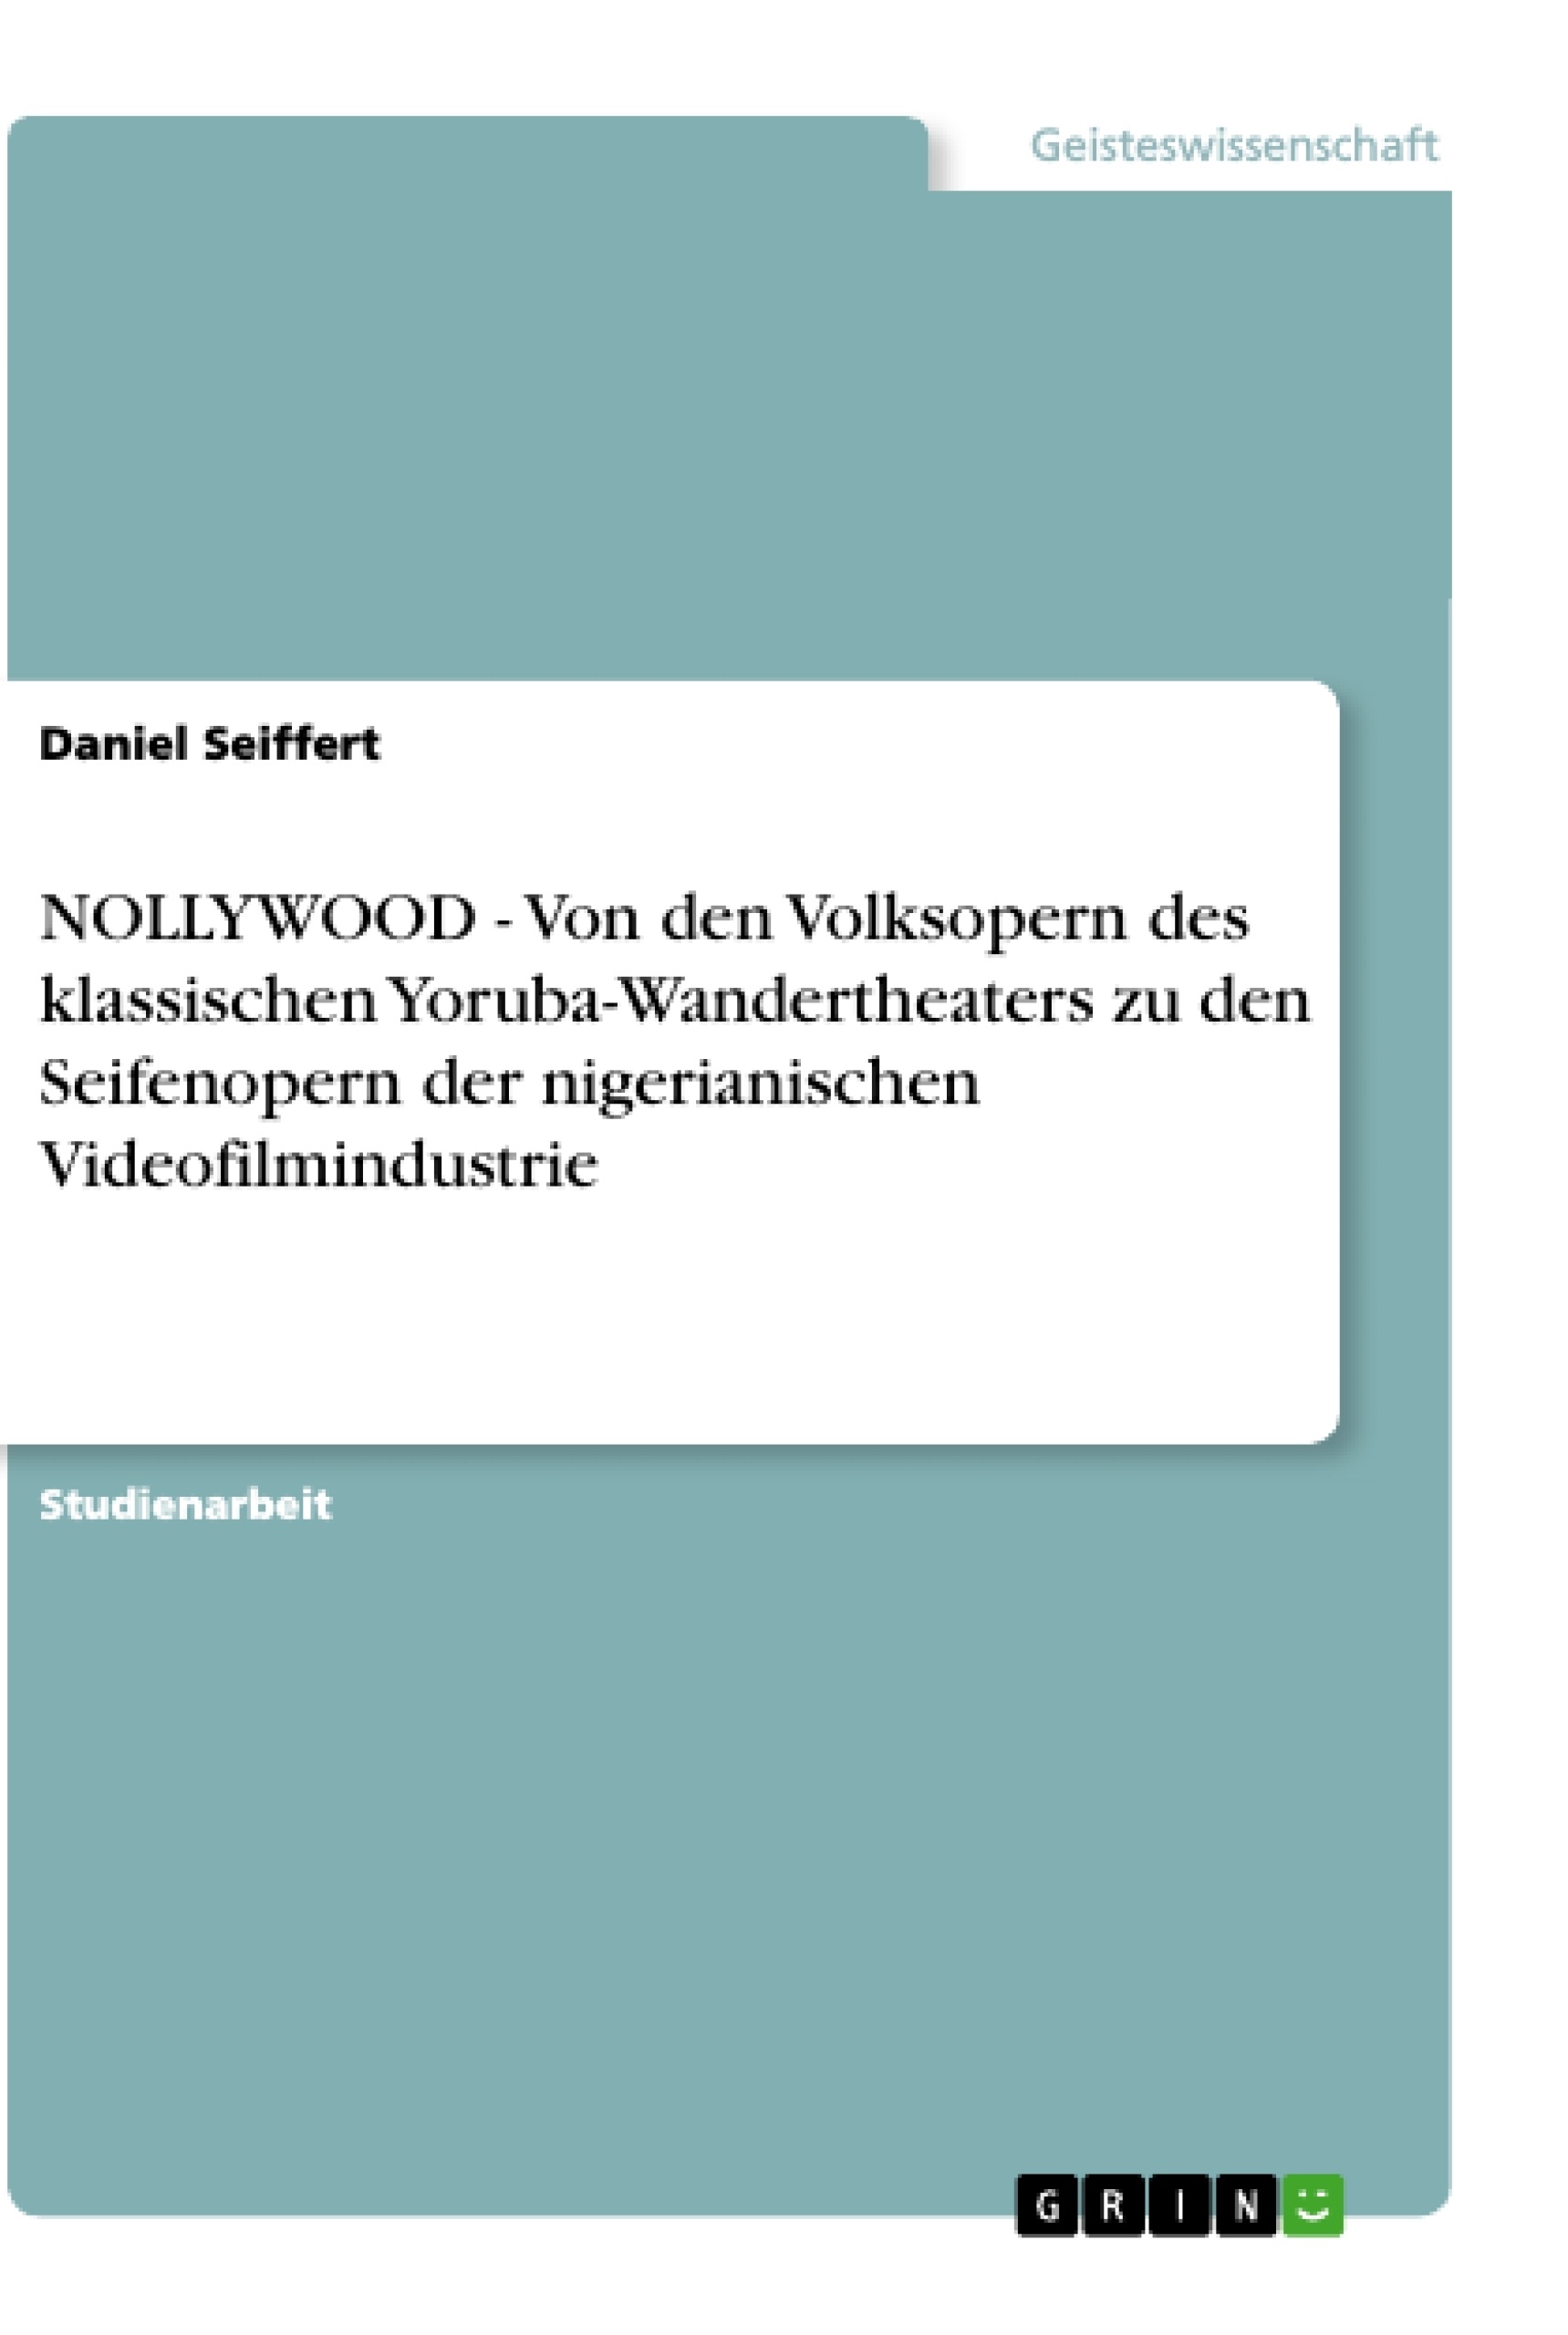 Titre: NOLLYWOOD - Von den Volksopern des klassischen Yoruba-Wandertheaters zu den Seifenopern der nigerianischen Videofilmindustrie